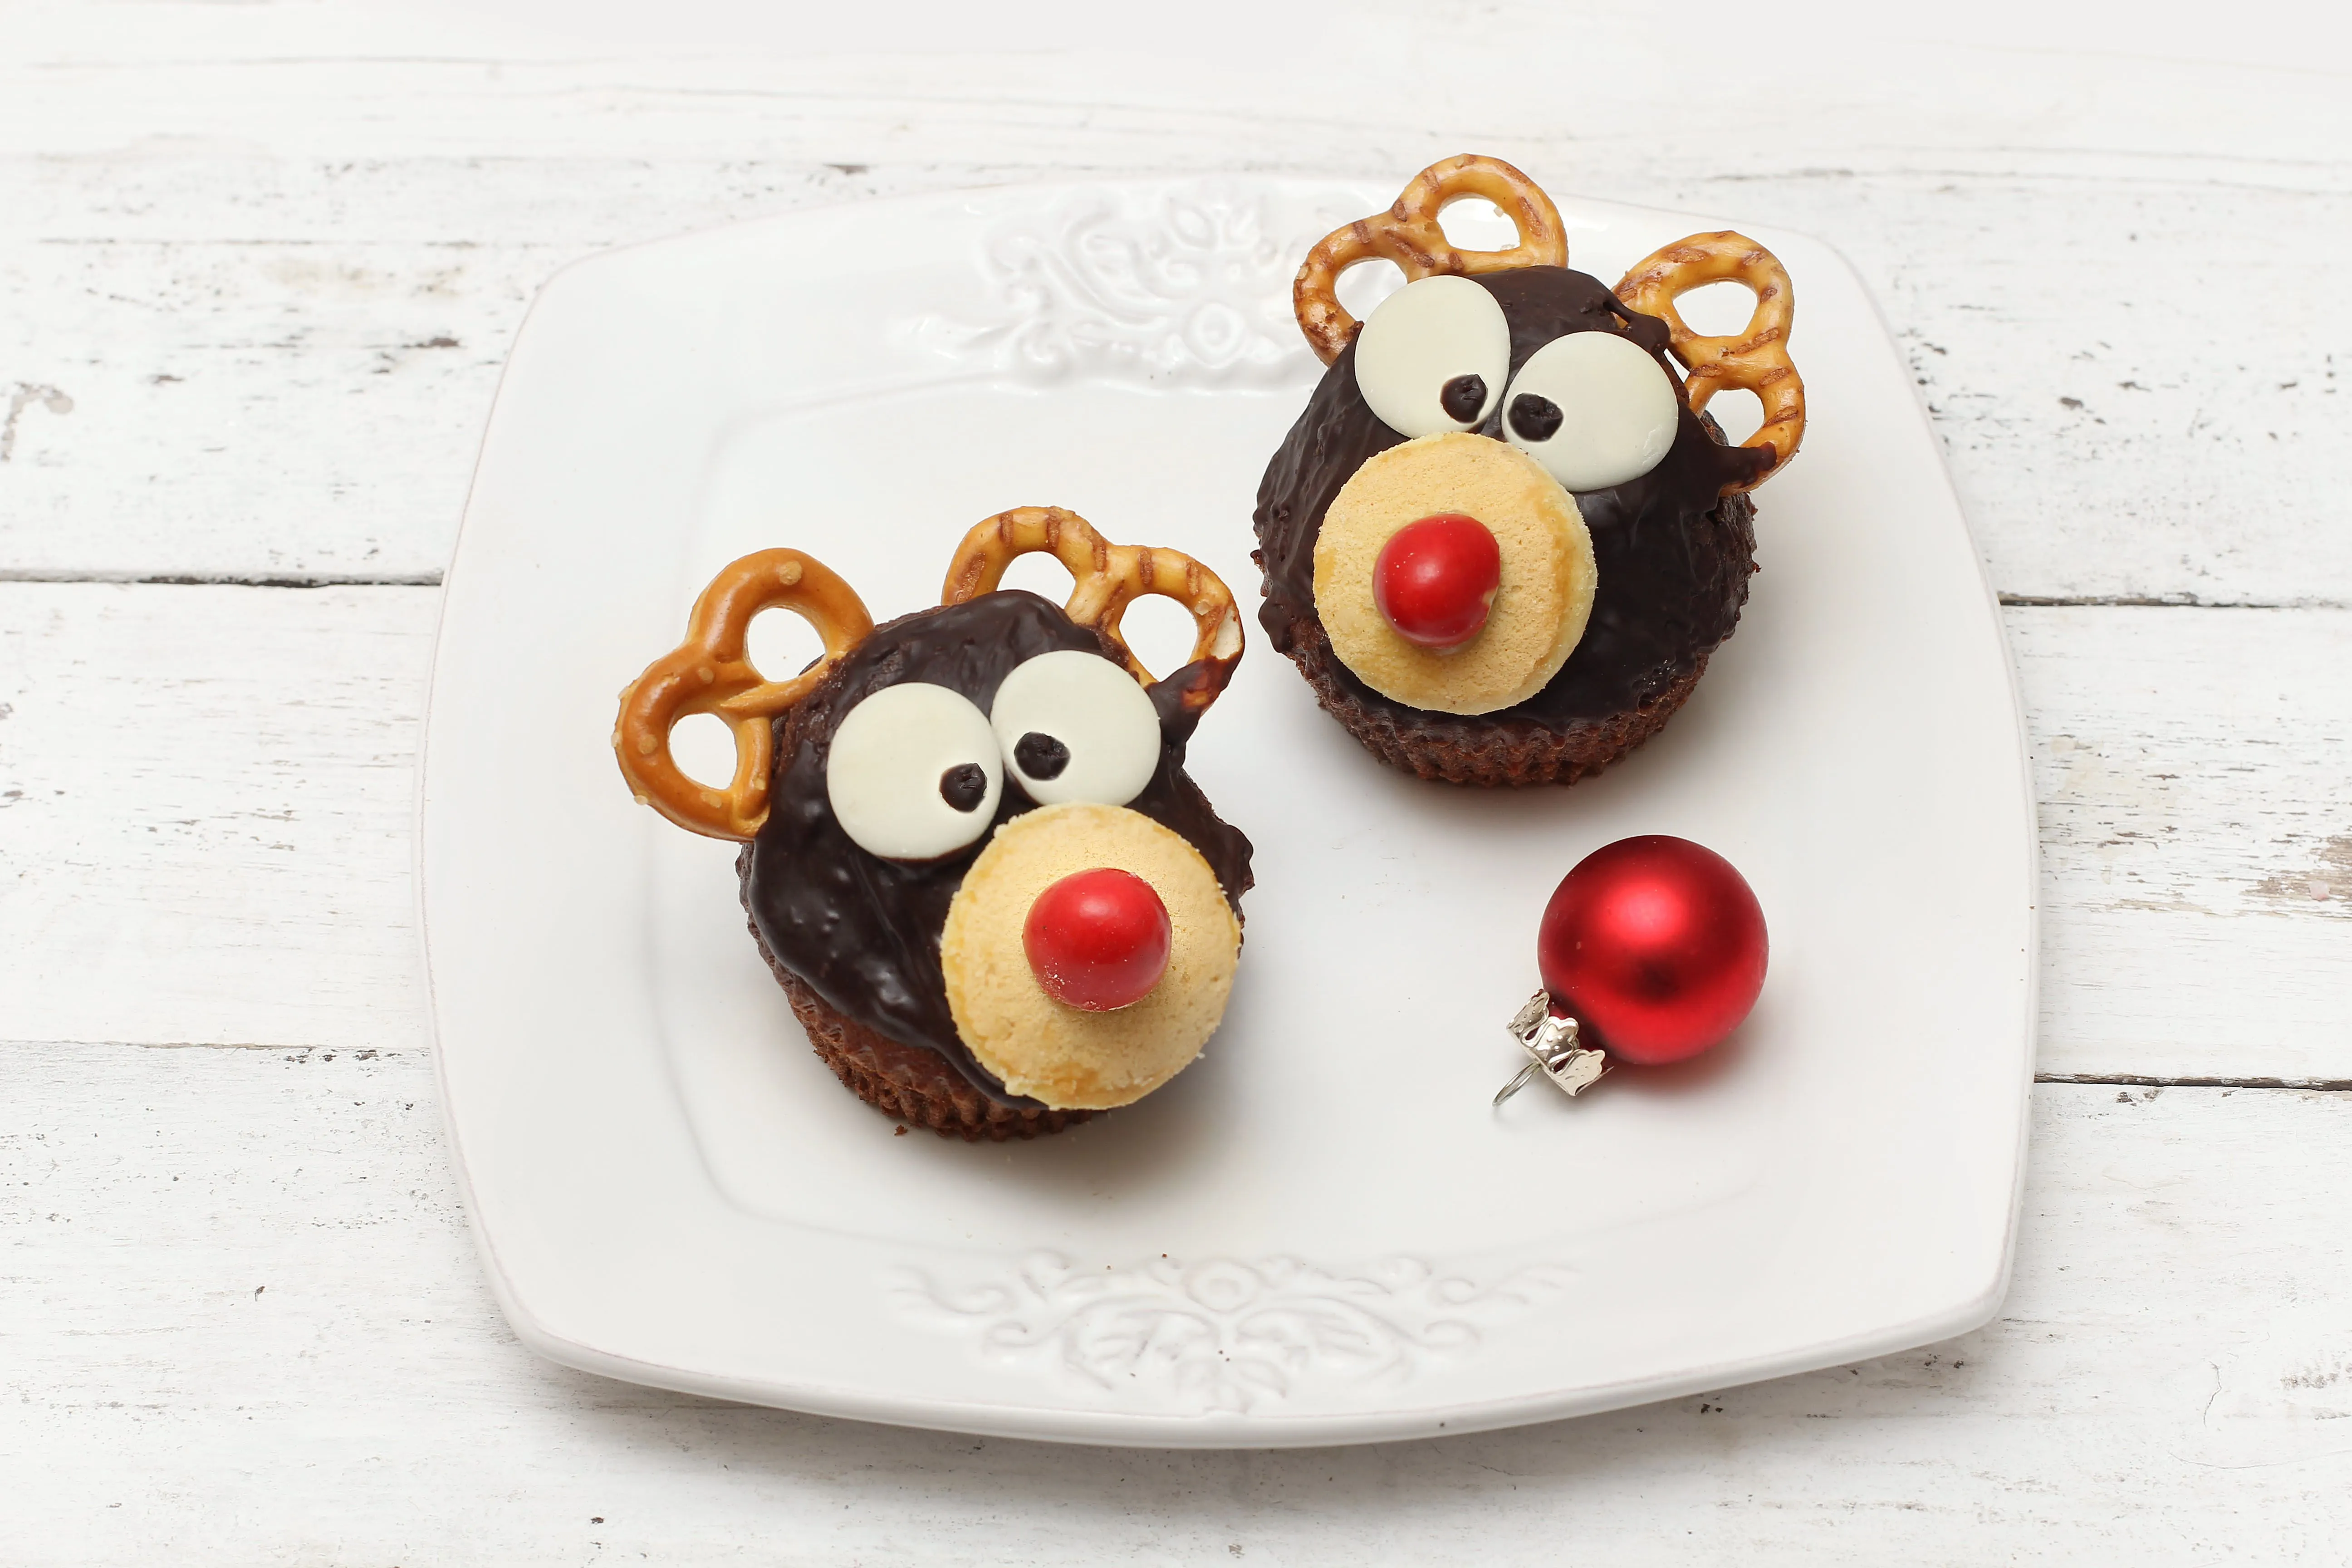 Na obrázku sú čokoládové muffiny v tvare sobíkov.